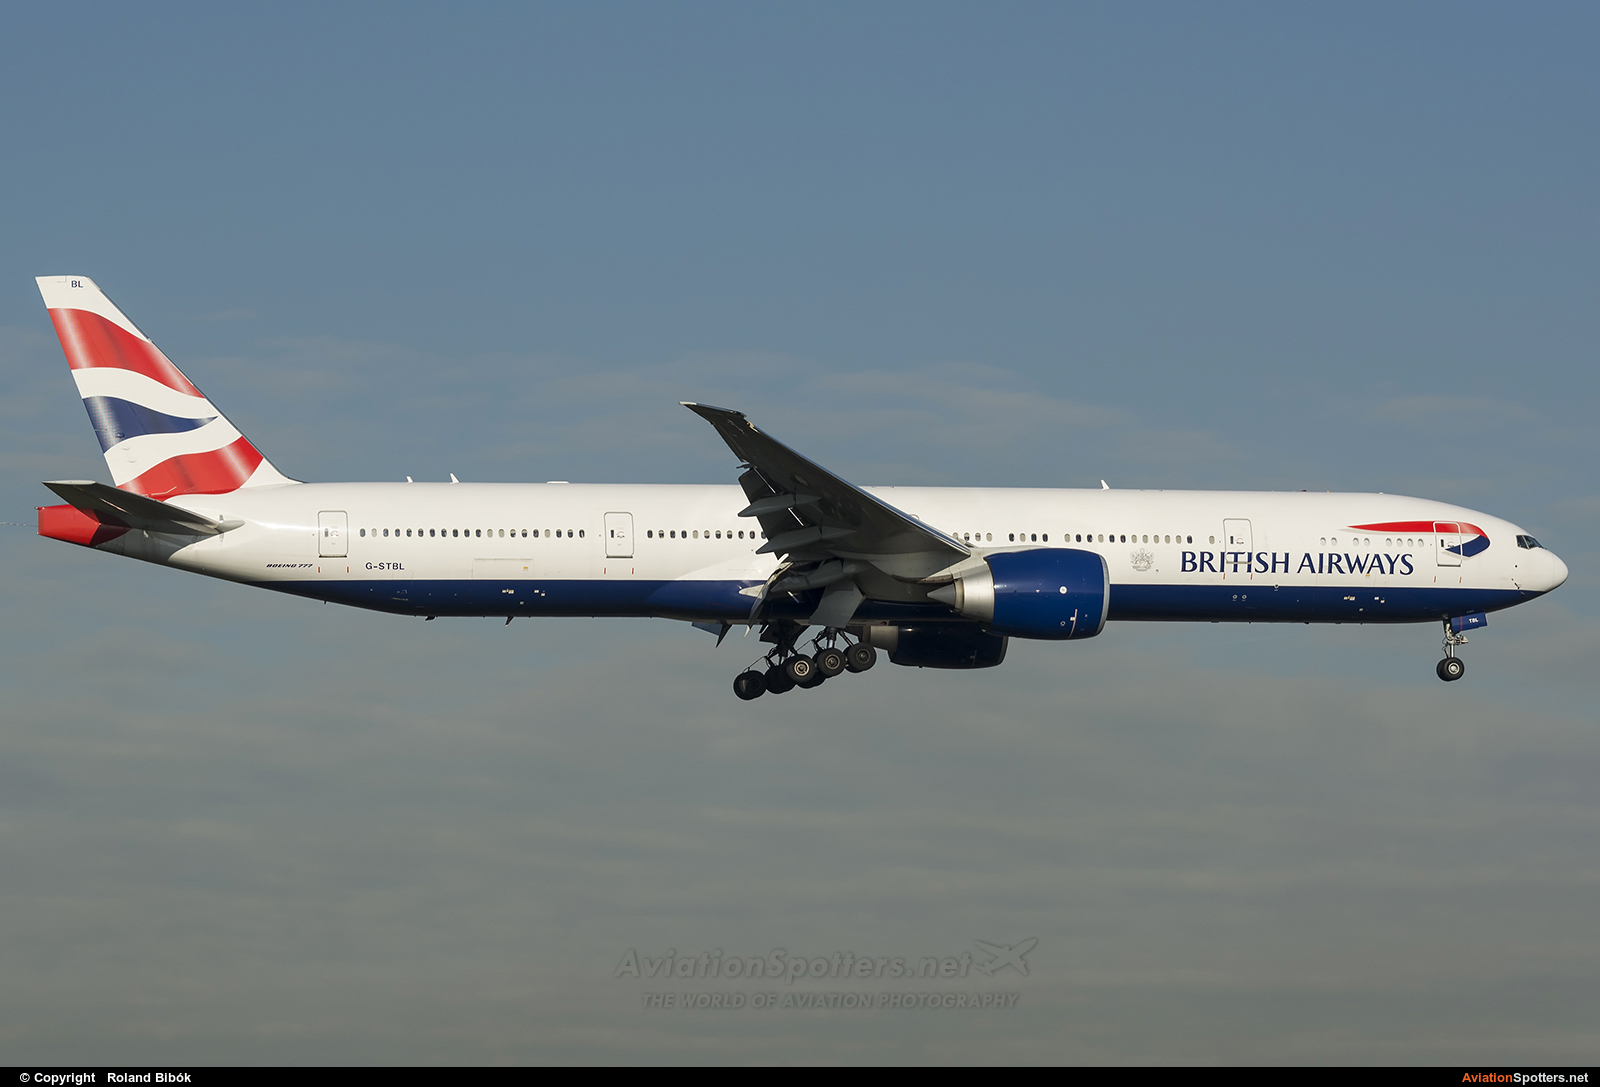 British Airways  -  777-300ER  (G-STBL) By Roland Bibók (Roland Bibok)